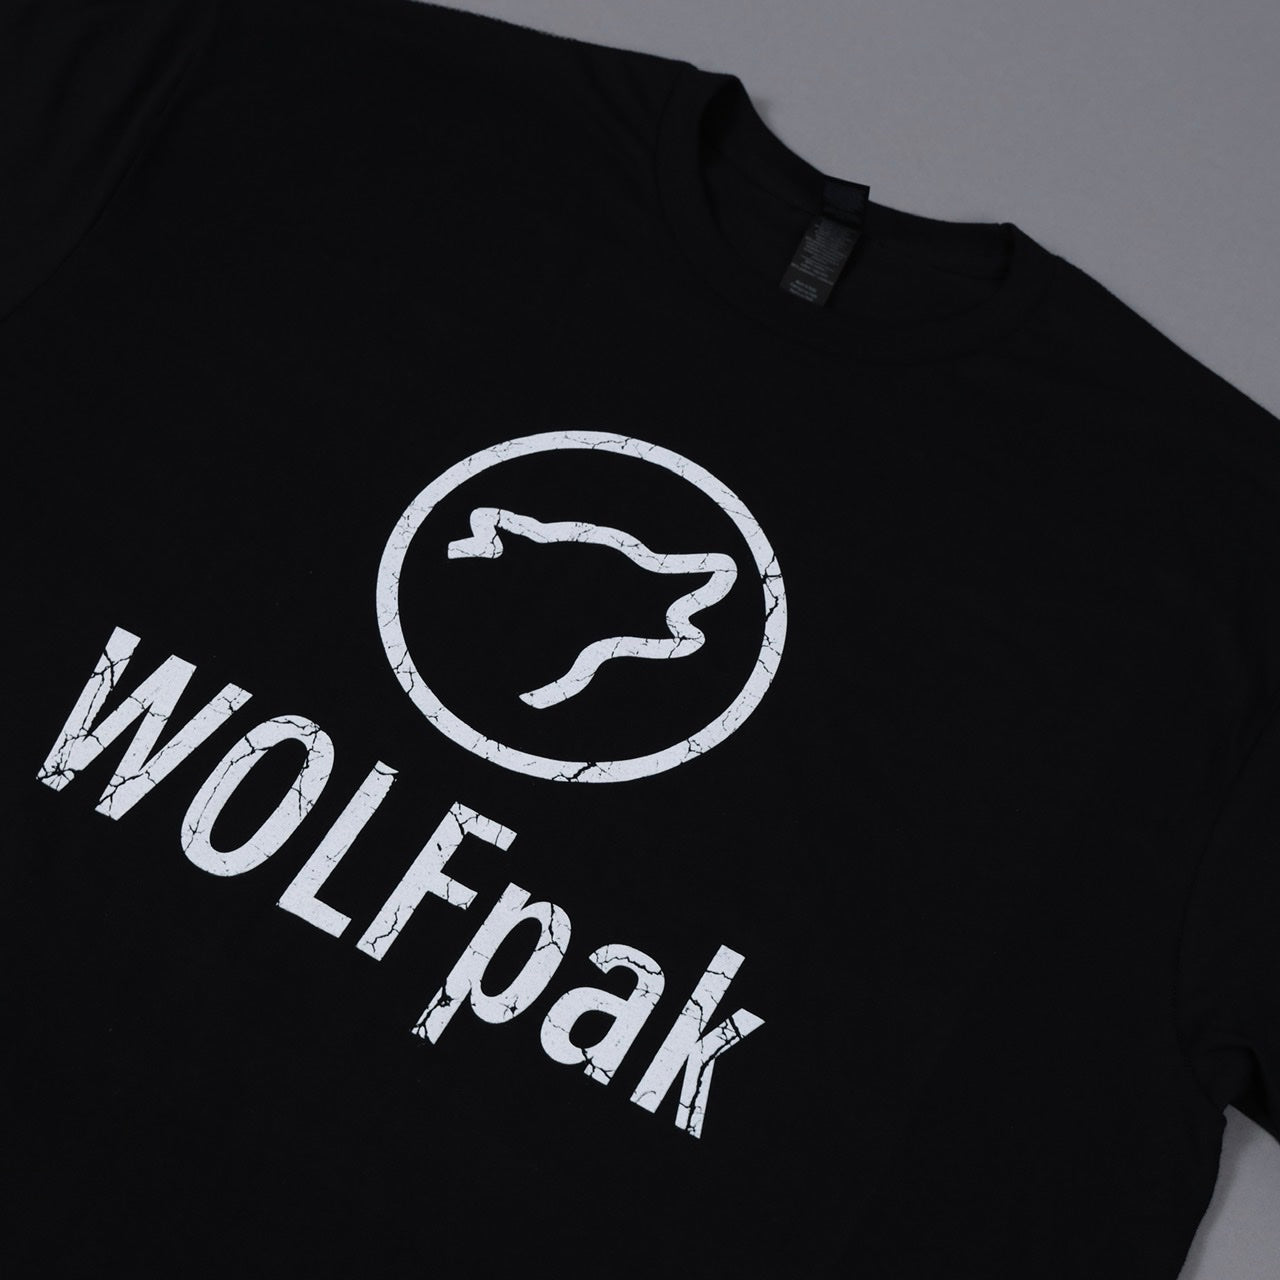 WOLFpak T-Shirt